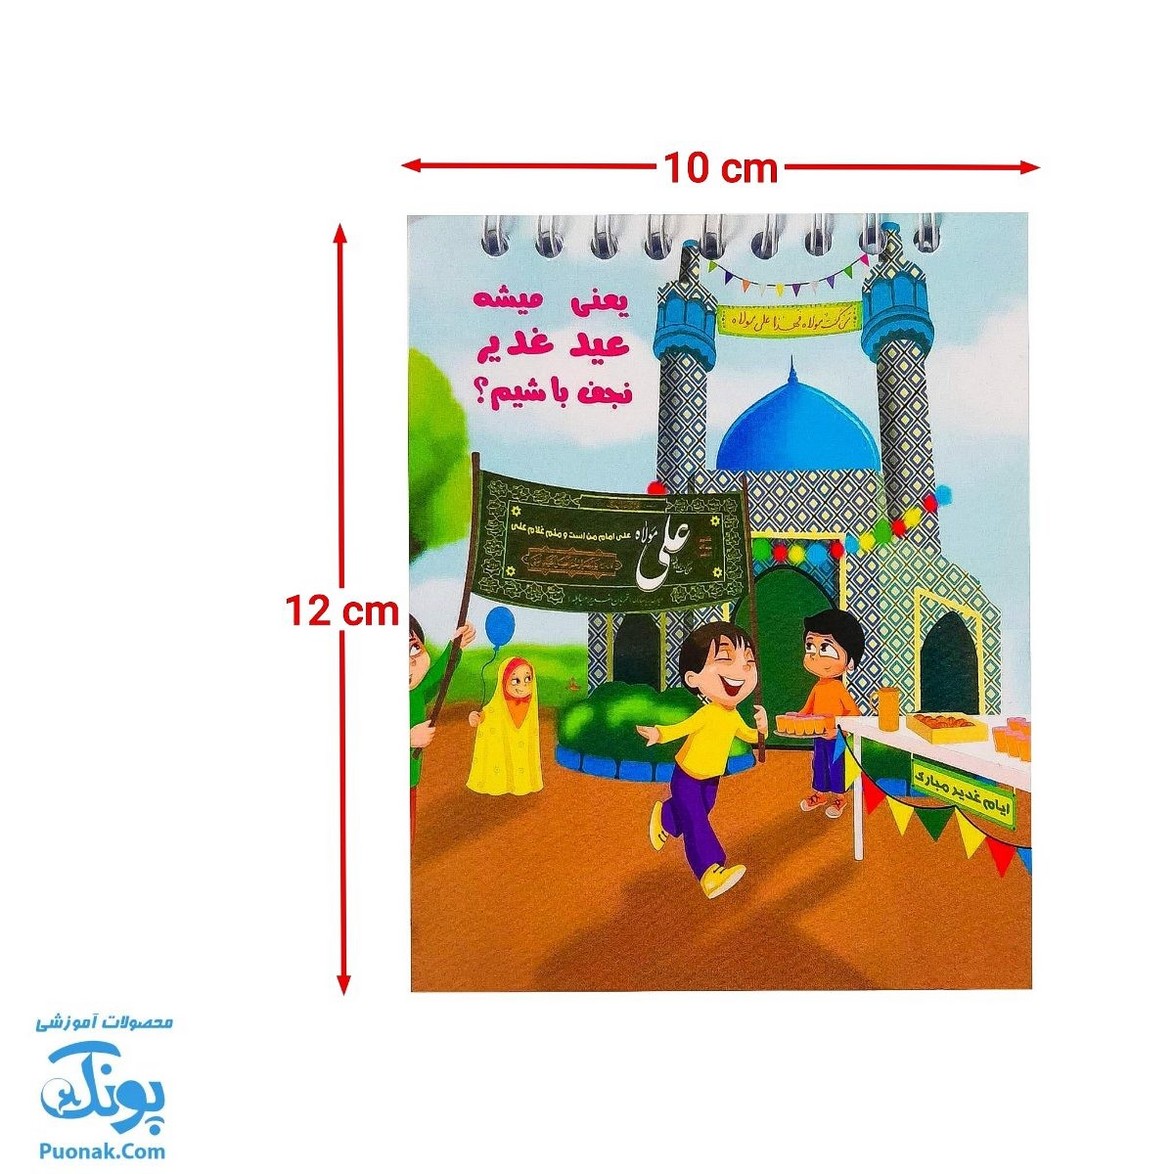 دفترچه فانتزی طرح اسلامی عید غدیر برای بچه ها |طرح بچه ها و پرچم غدیر |